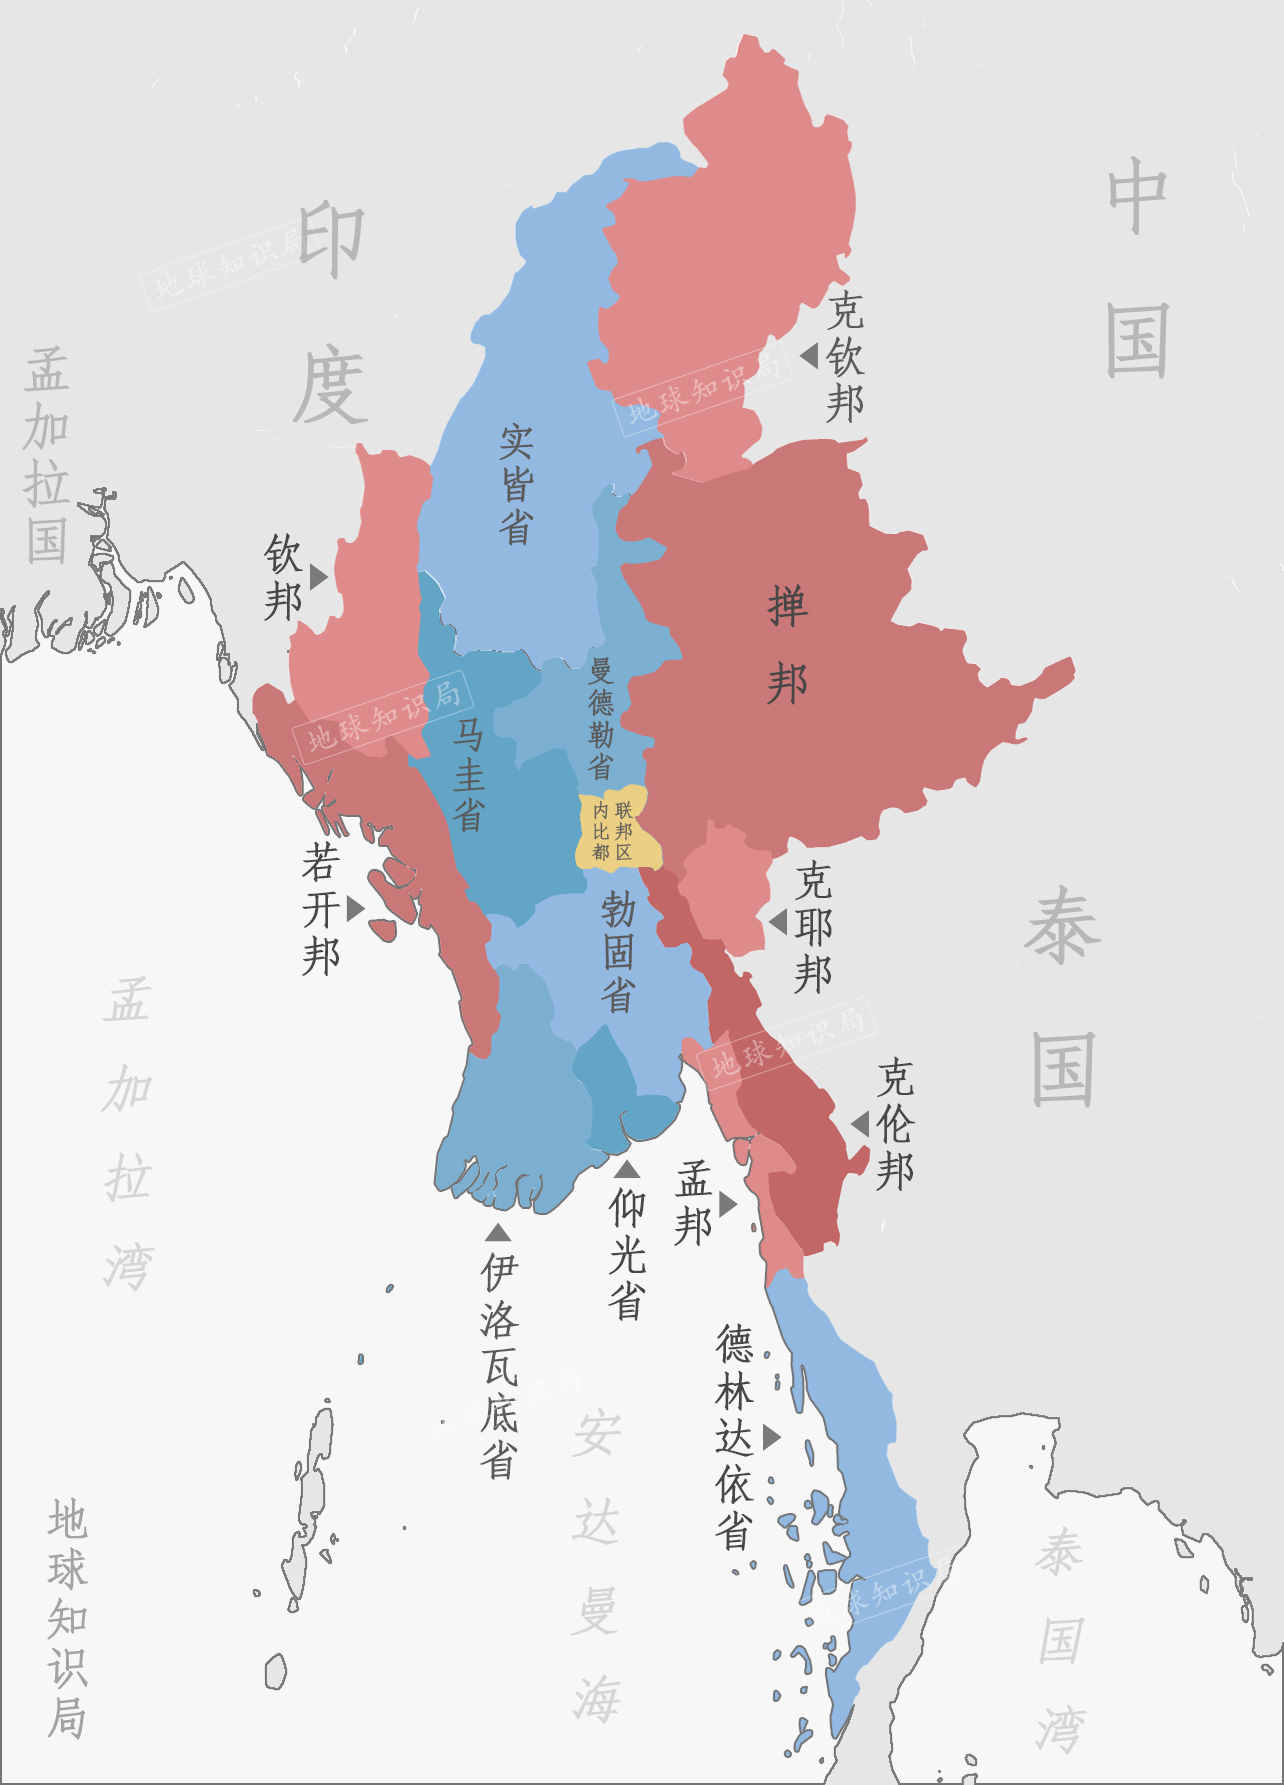 金三角 缅甸东北部的掸邦,其面积之大近乎占据了缅甸领土的四分之一